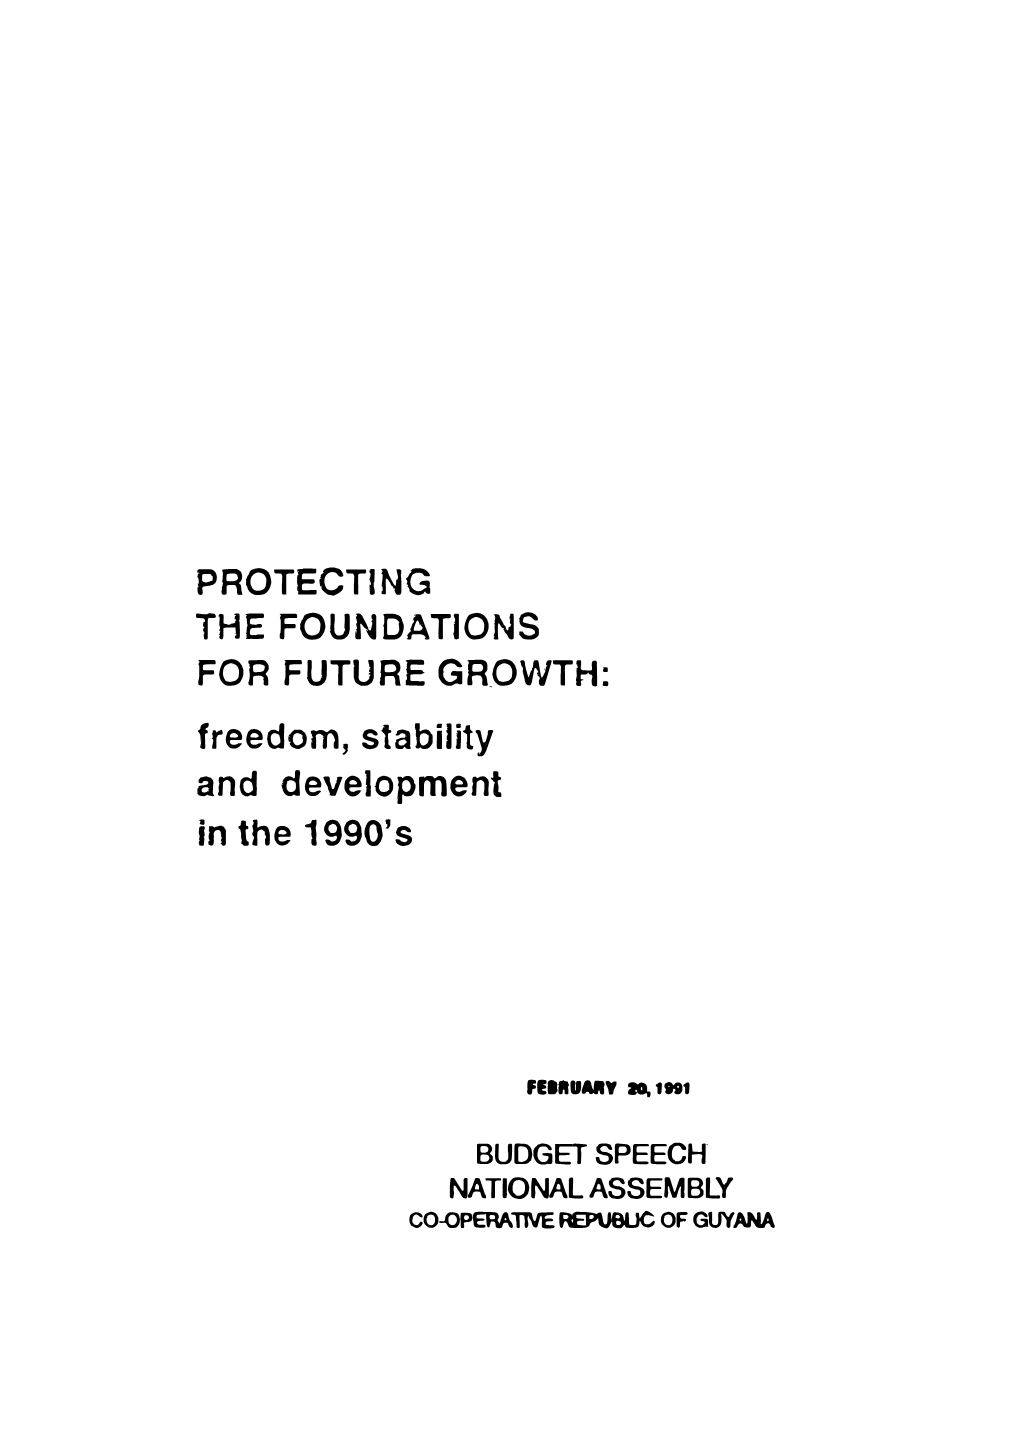 Budget Speech 1991